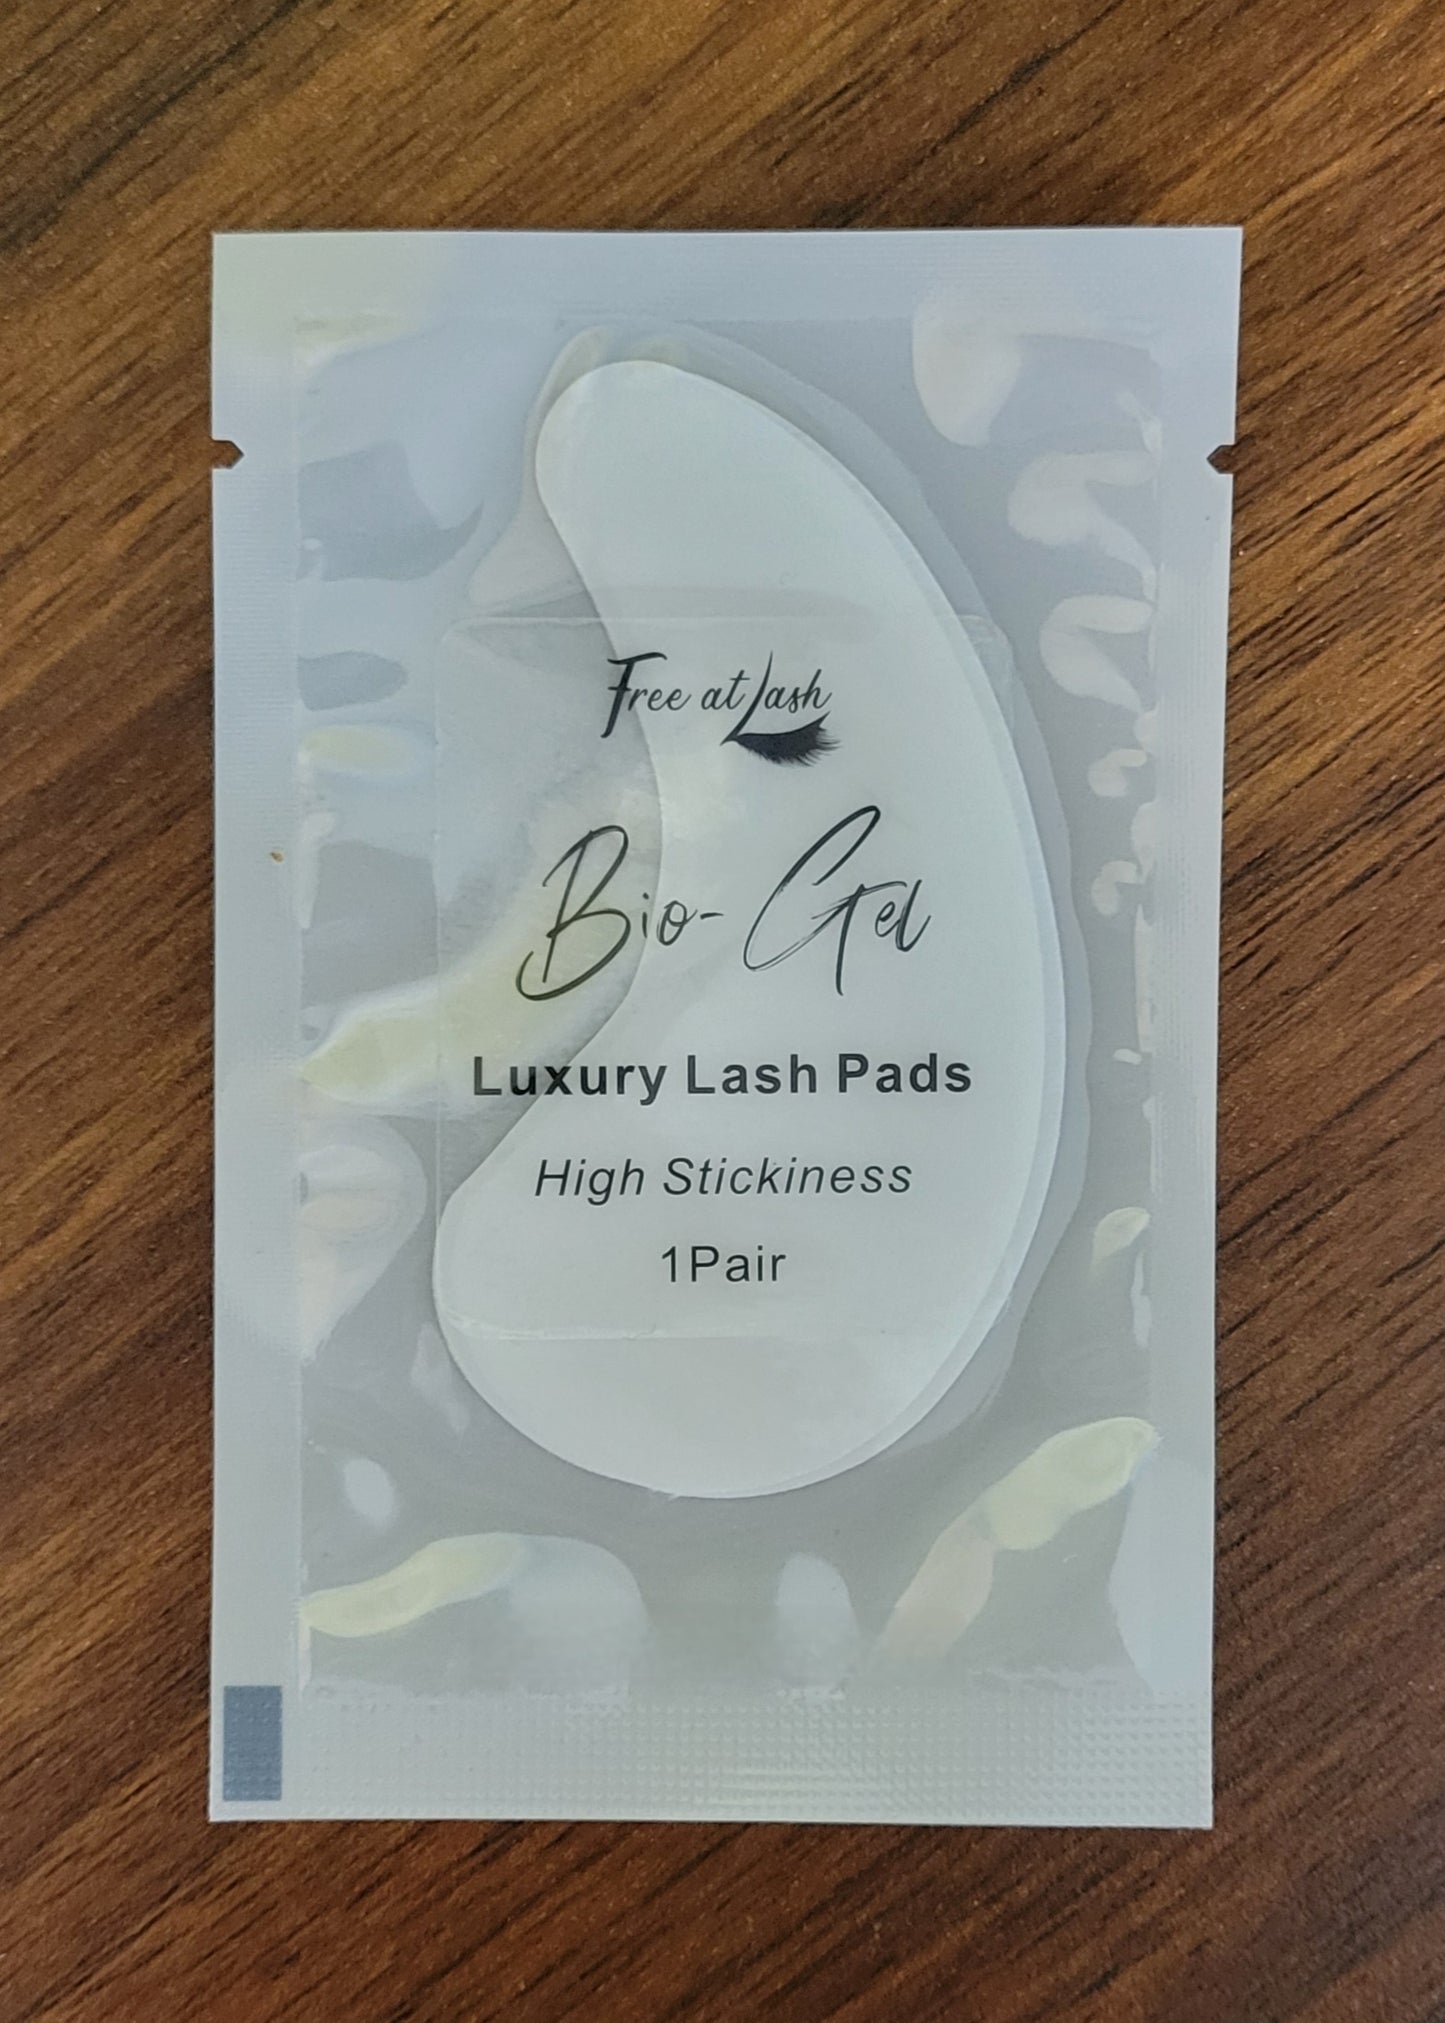 The Original - Luxury Lash Pads